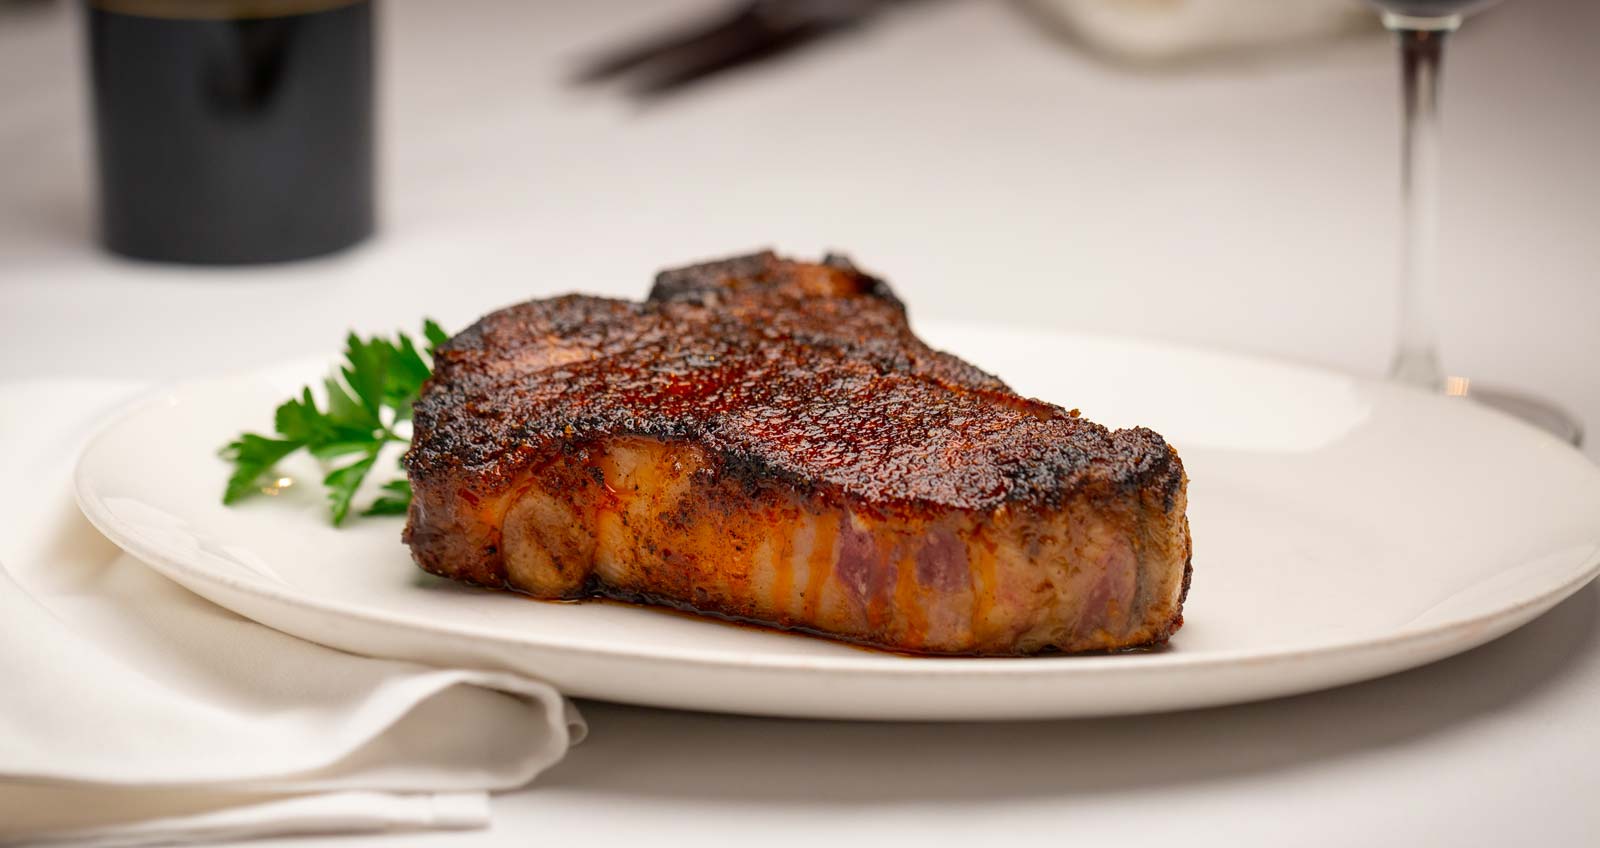 Steak on plate